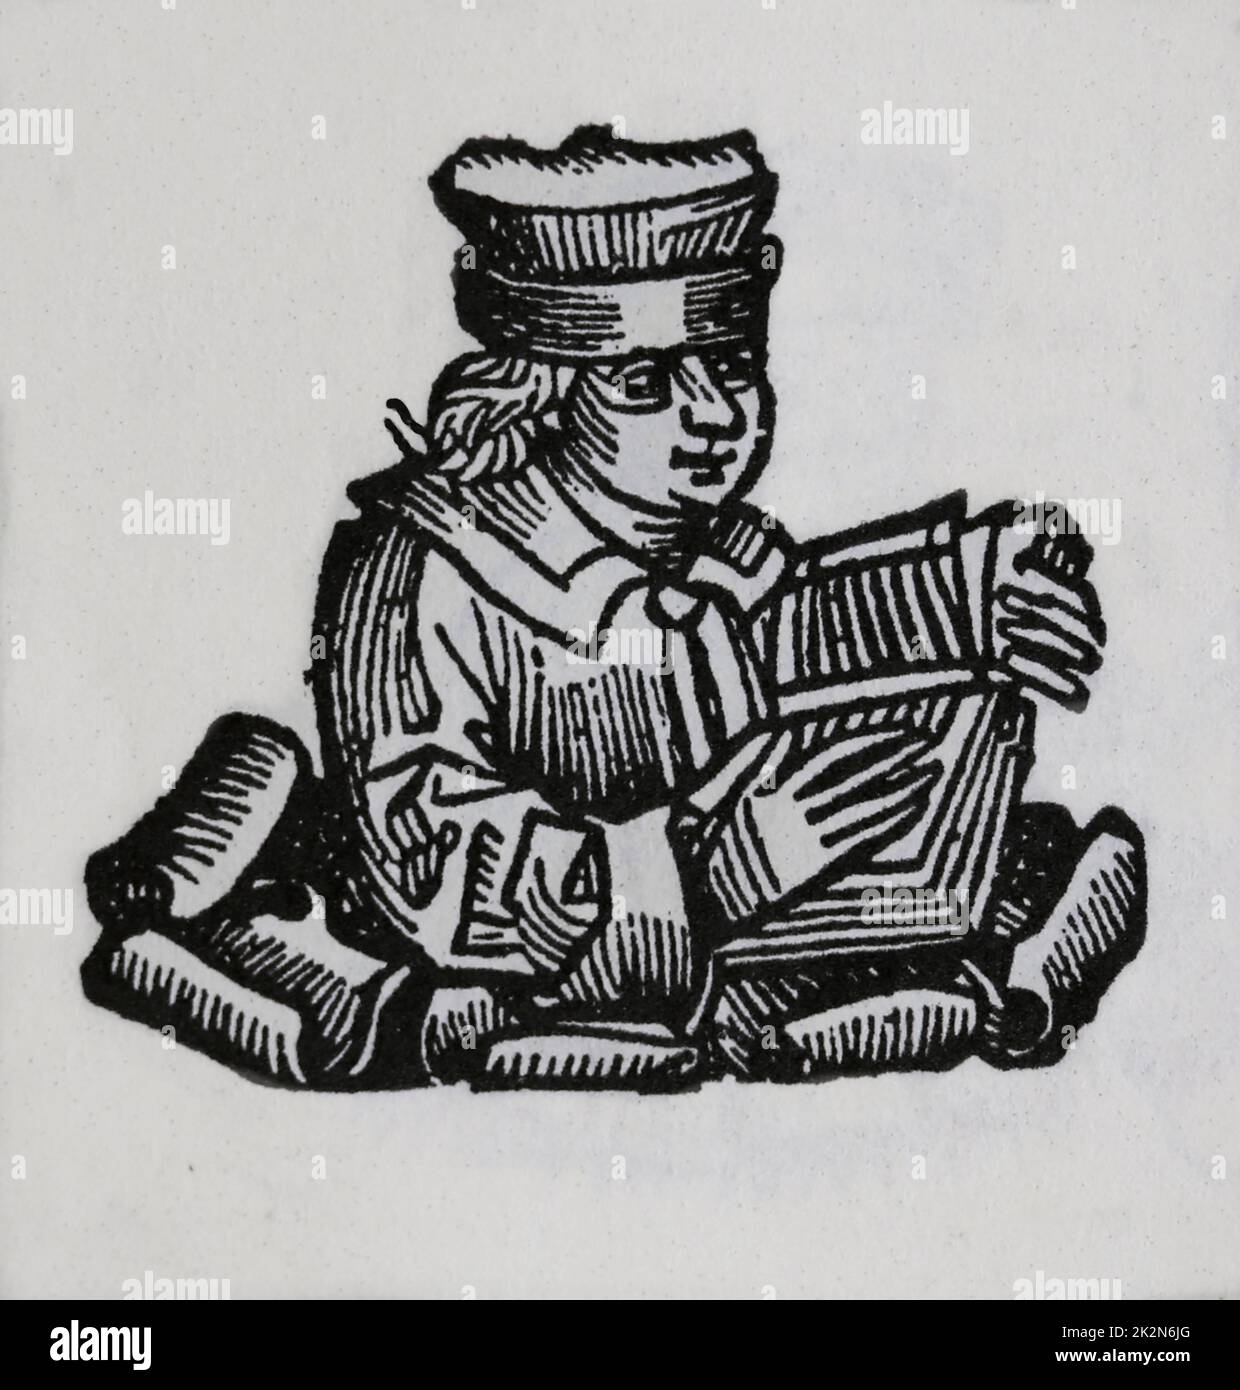 Jérôme de Prague (1360-1416). Philosophe scolastique tchèque. A été brûlé pour hérésie. Gravure. Le Cronicle de Nuremberg, 15th siècle. Banque D'Images